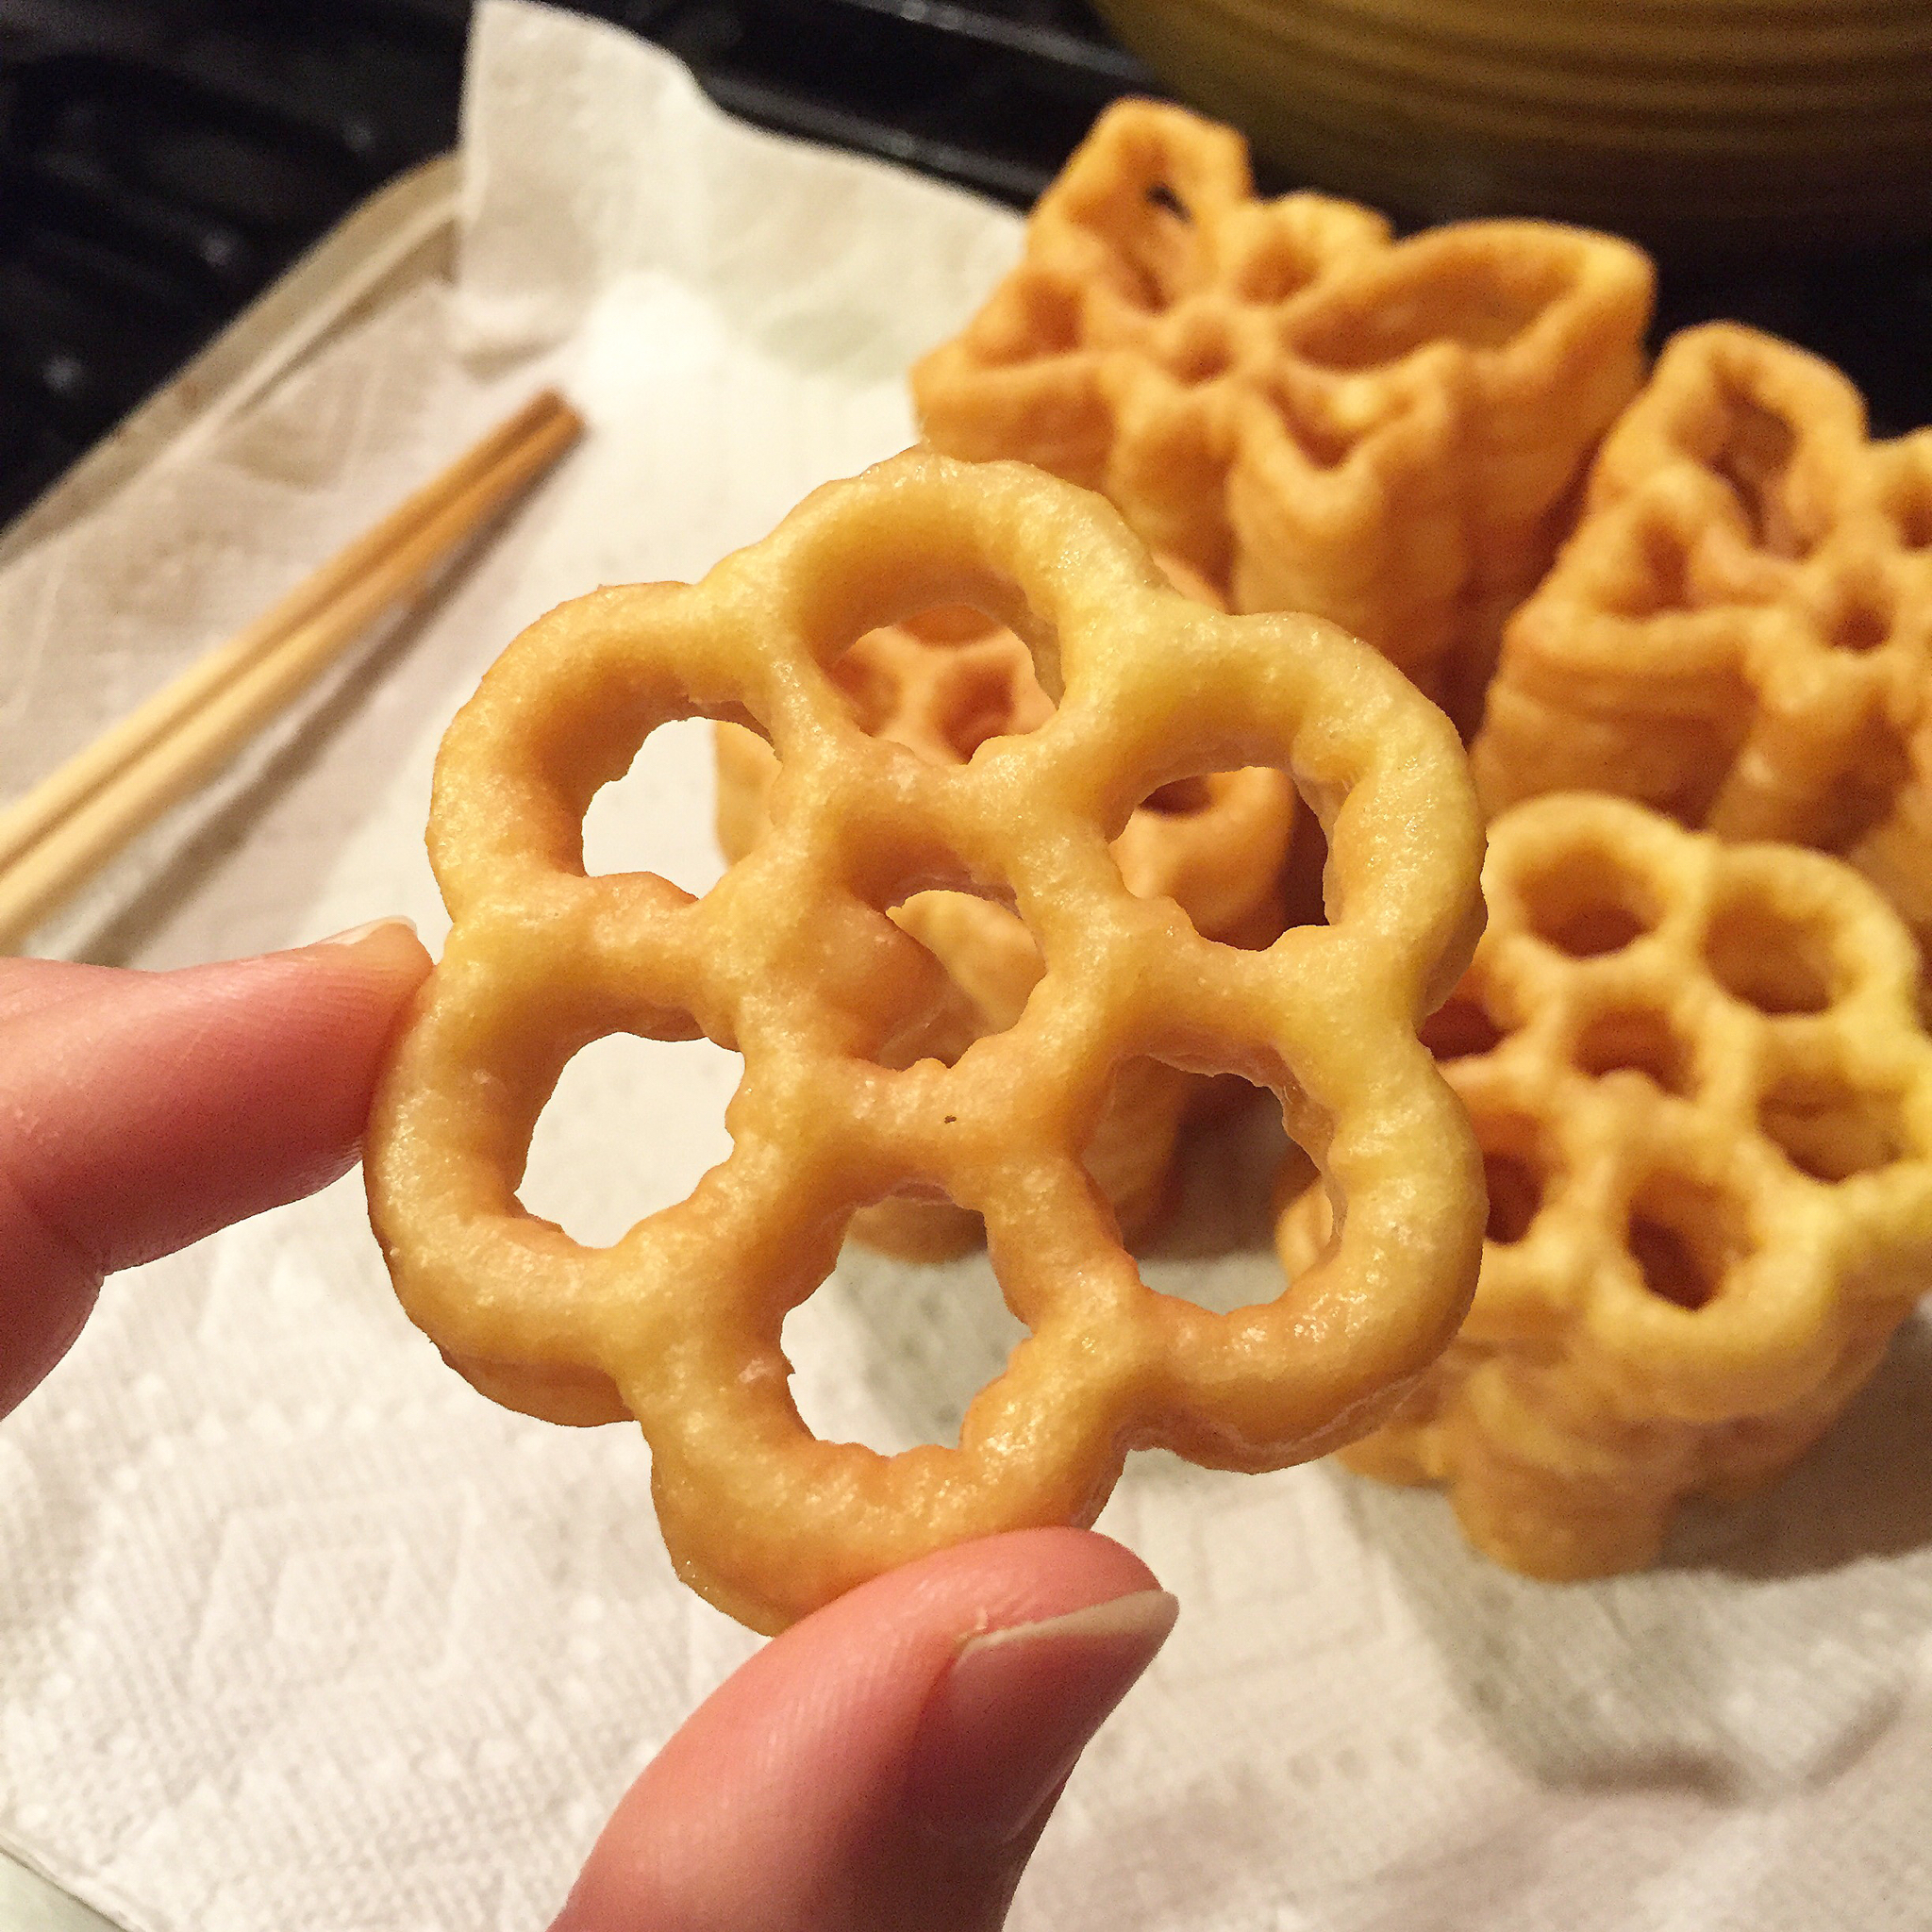 蜂窝饼（Honeycomb Cookies）南洋华人过年必备零食